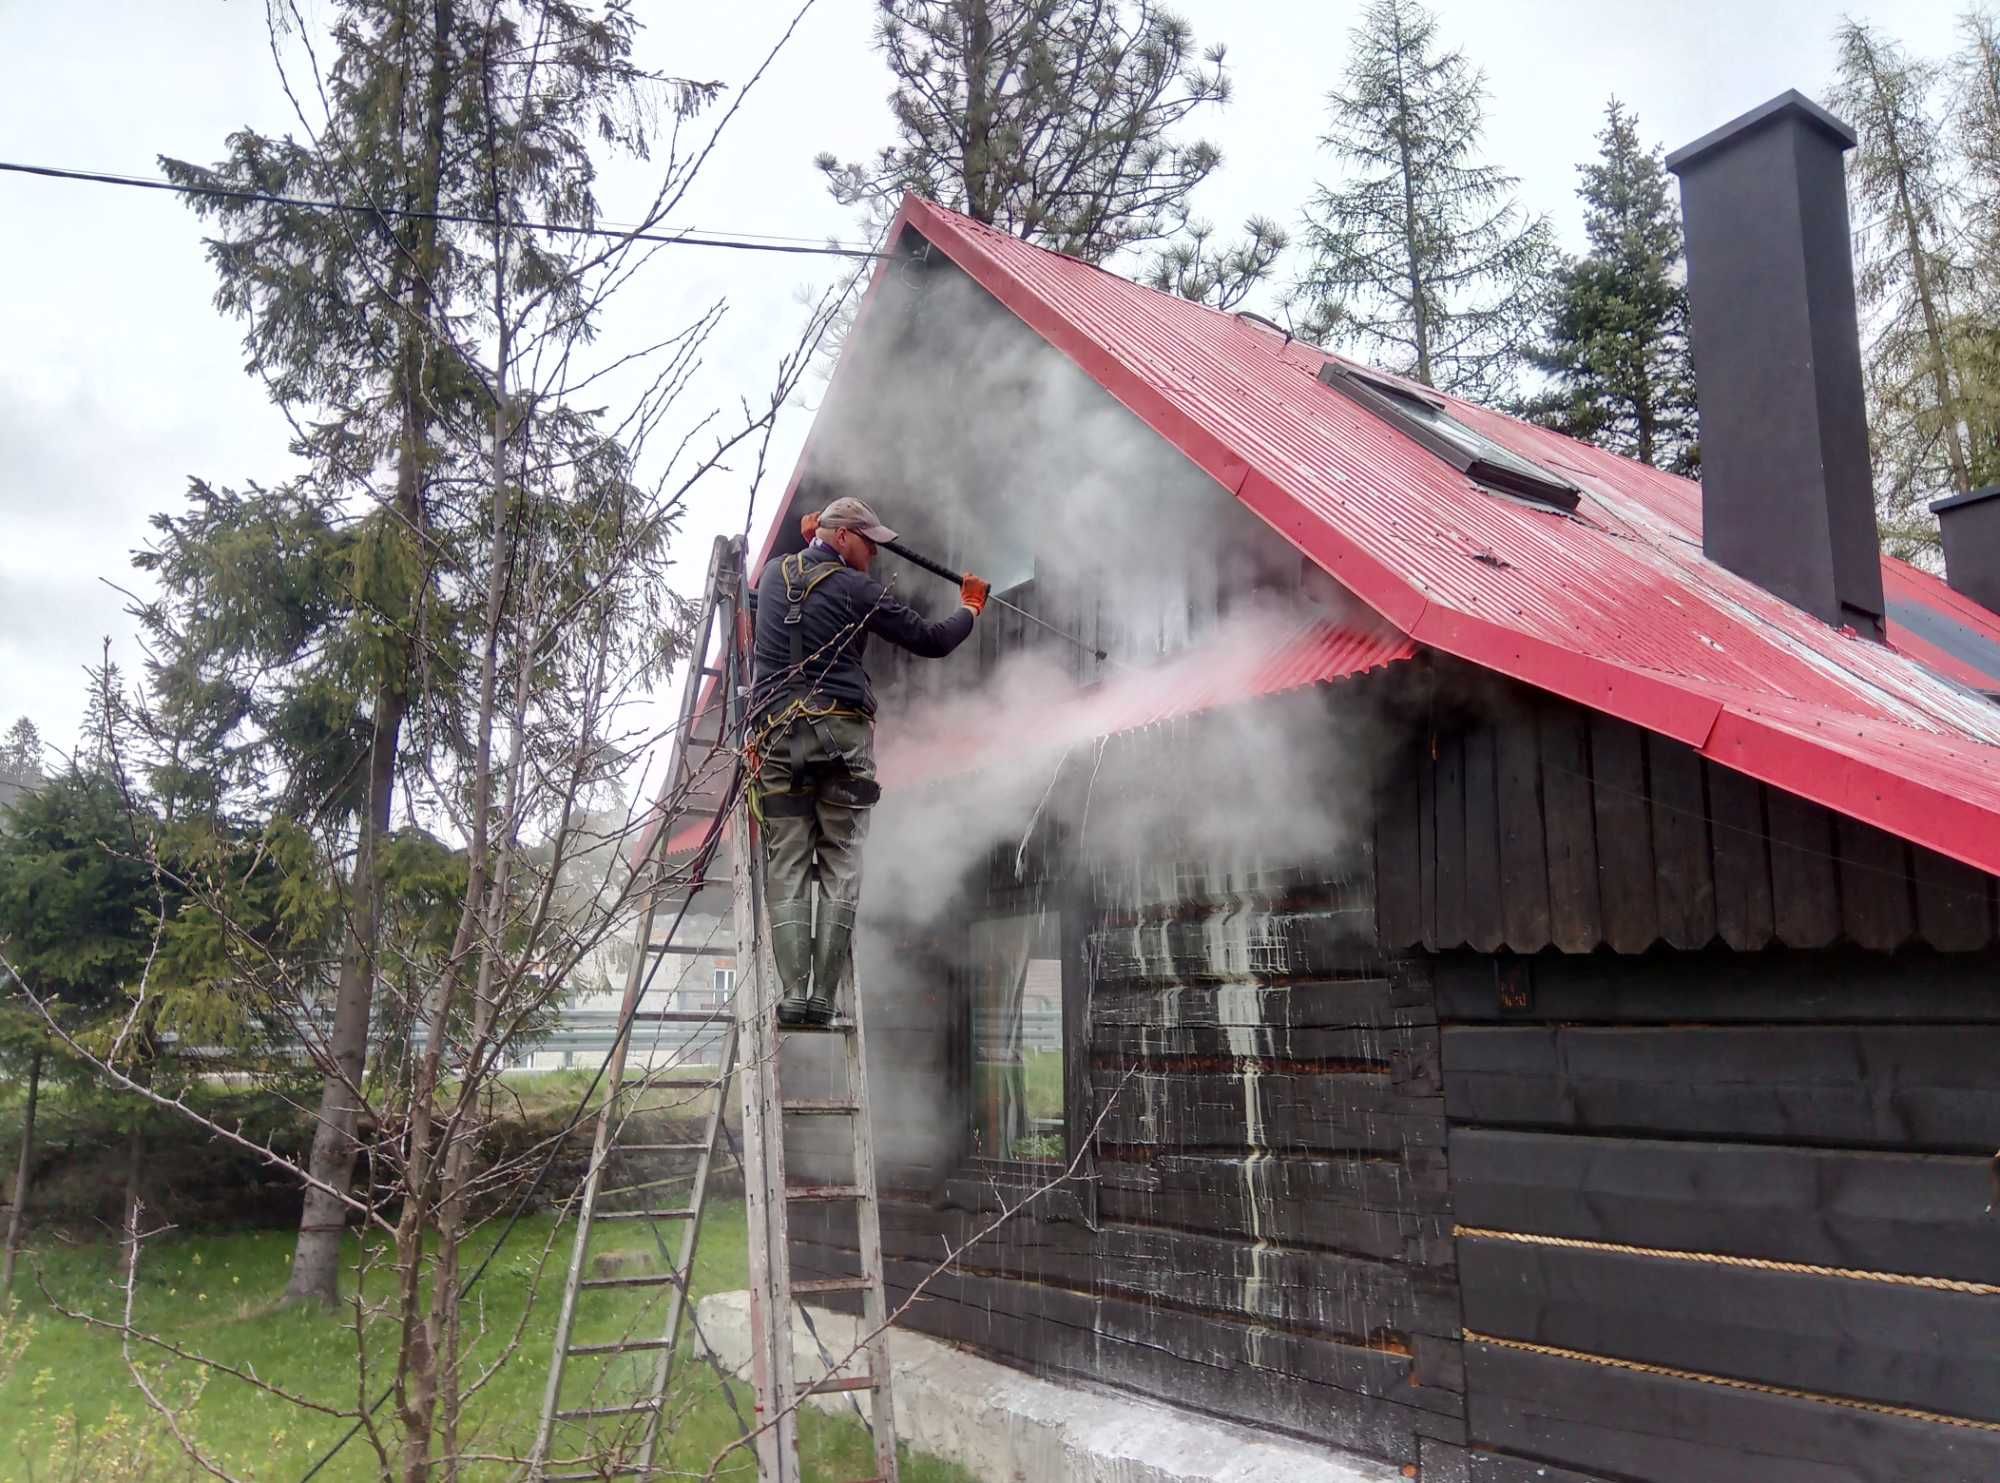 Malowanie i mycie dachu dachów / montaż rynien - prace alpinistyczne